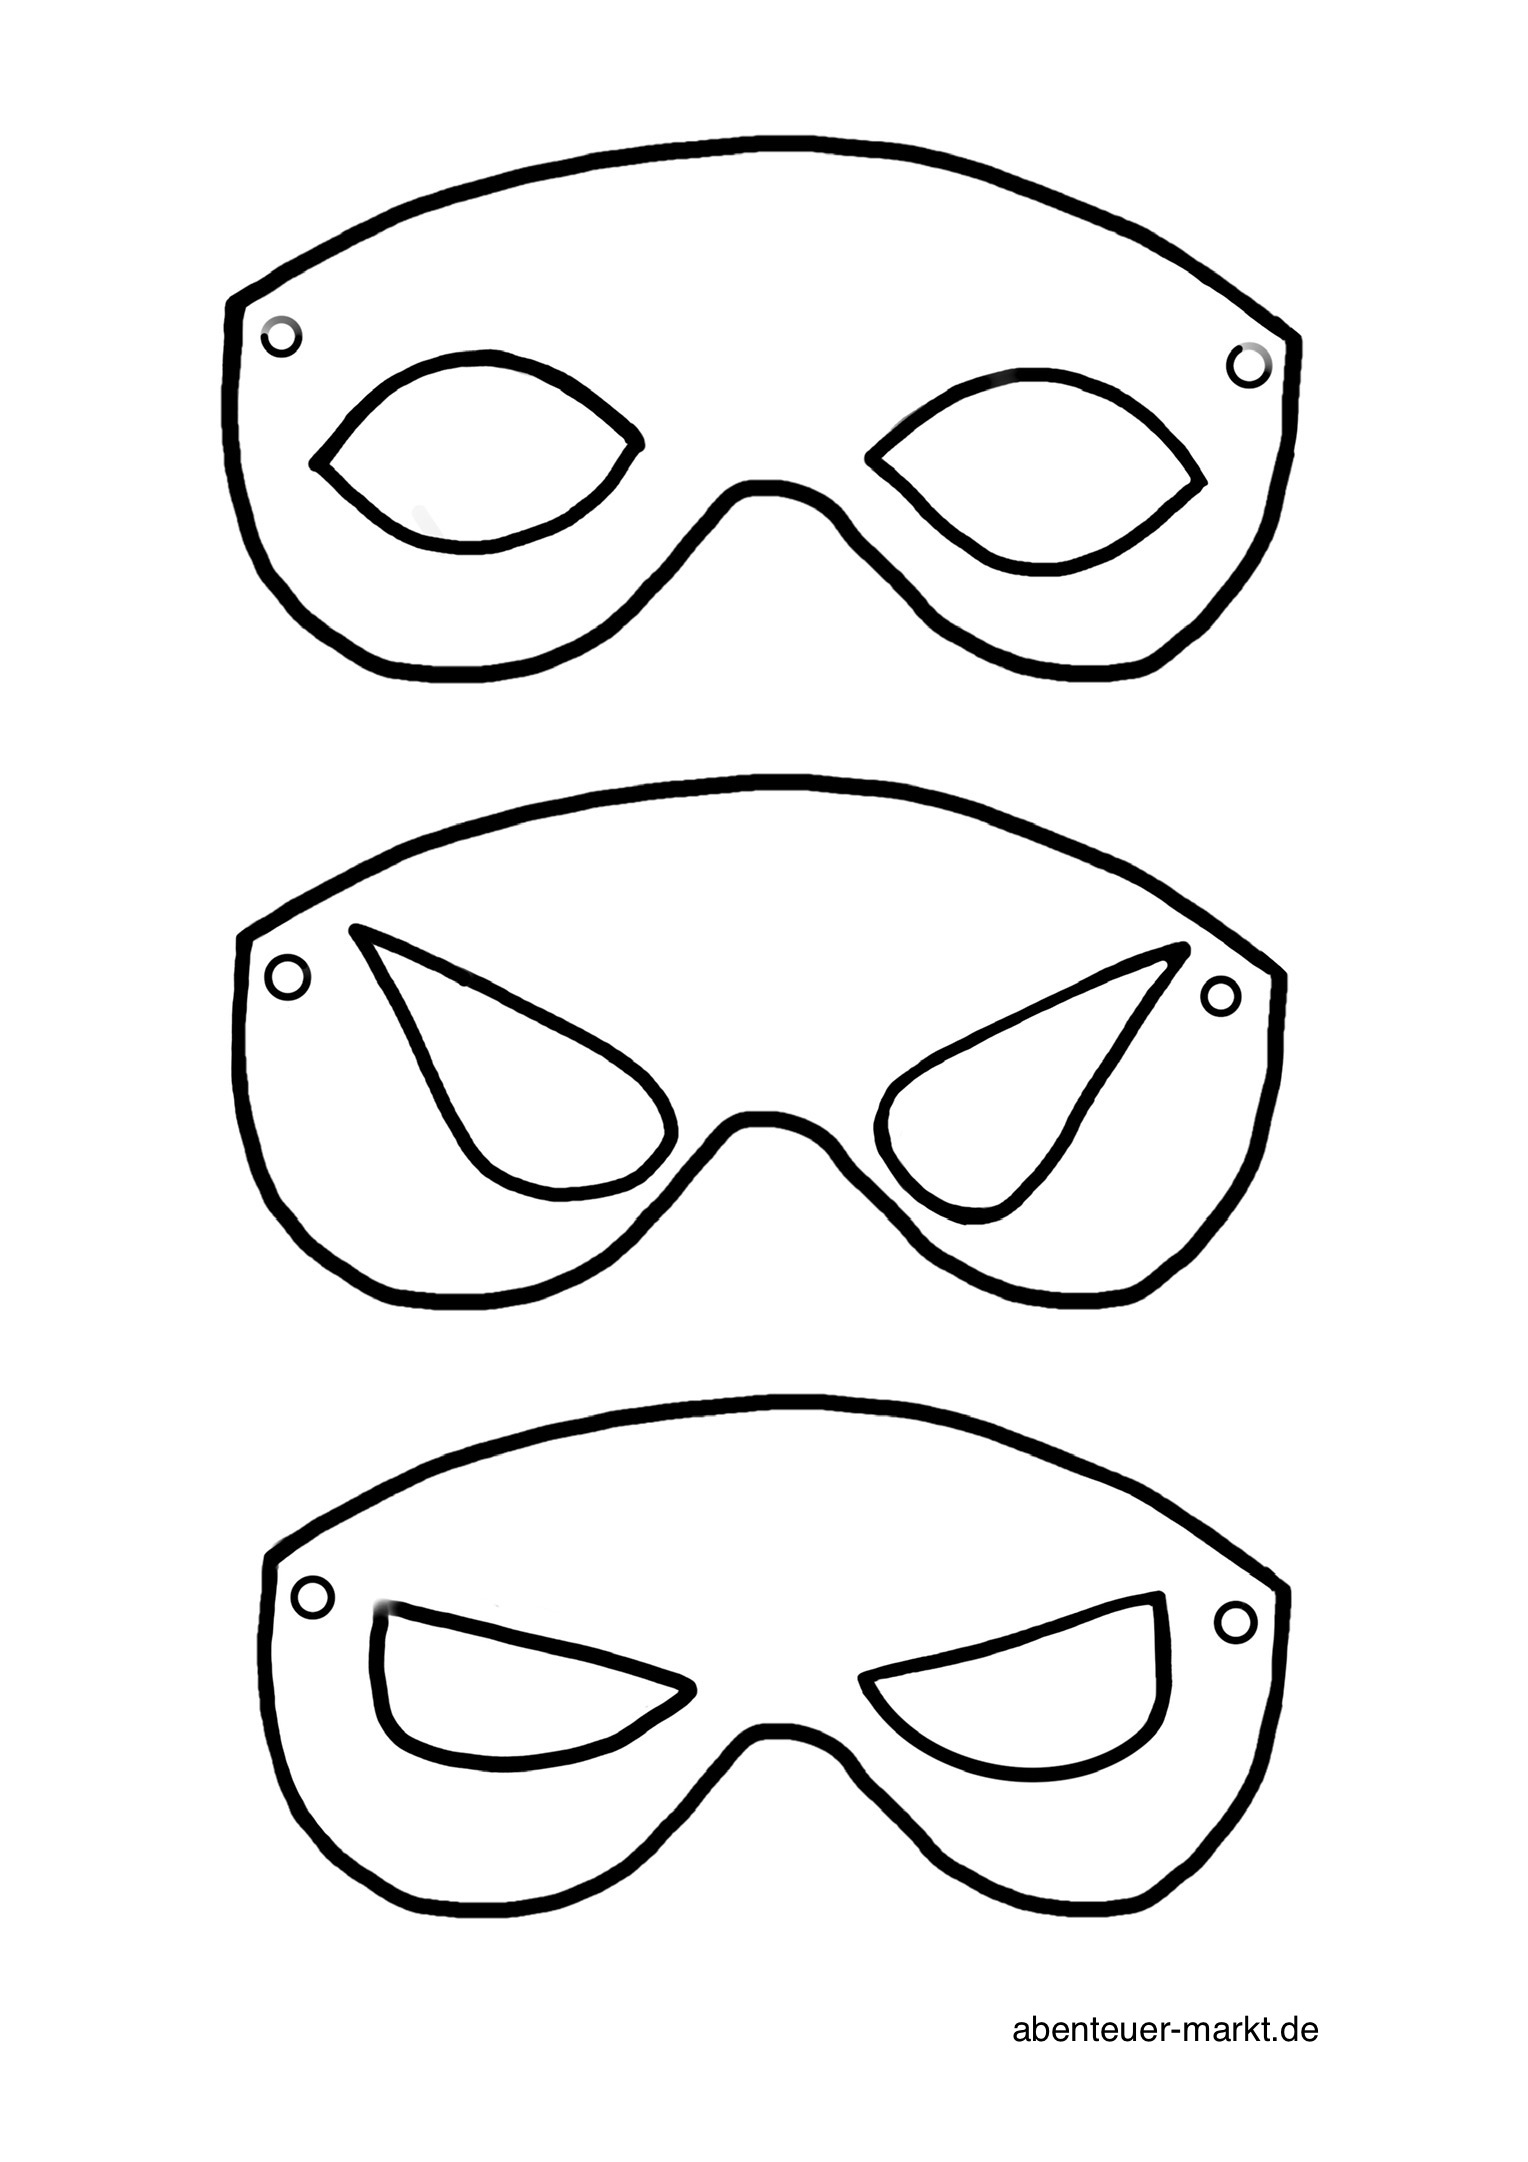 Bild zum Schritt 5 für das Bastel- und DIY-Abenteuer für Kinder: 'Diese Masken ermöglichen euch weitere Superhelden zu kreieren. Der eigenen...'